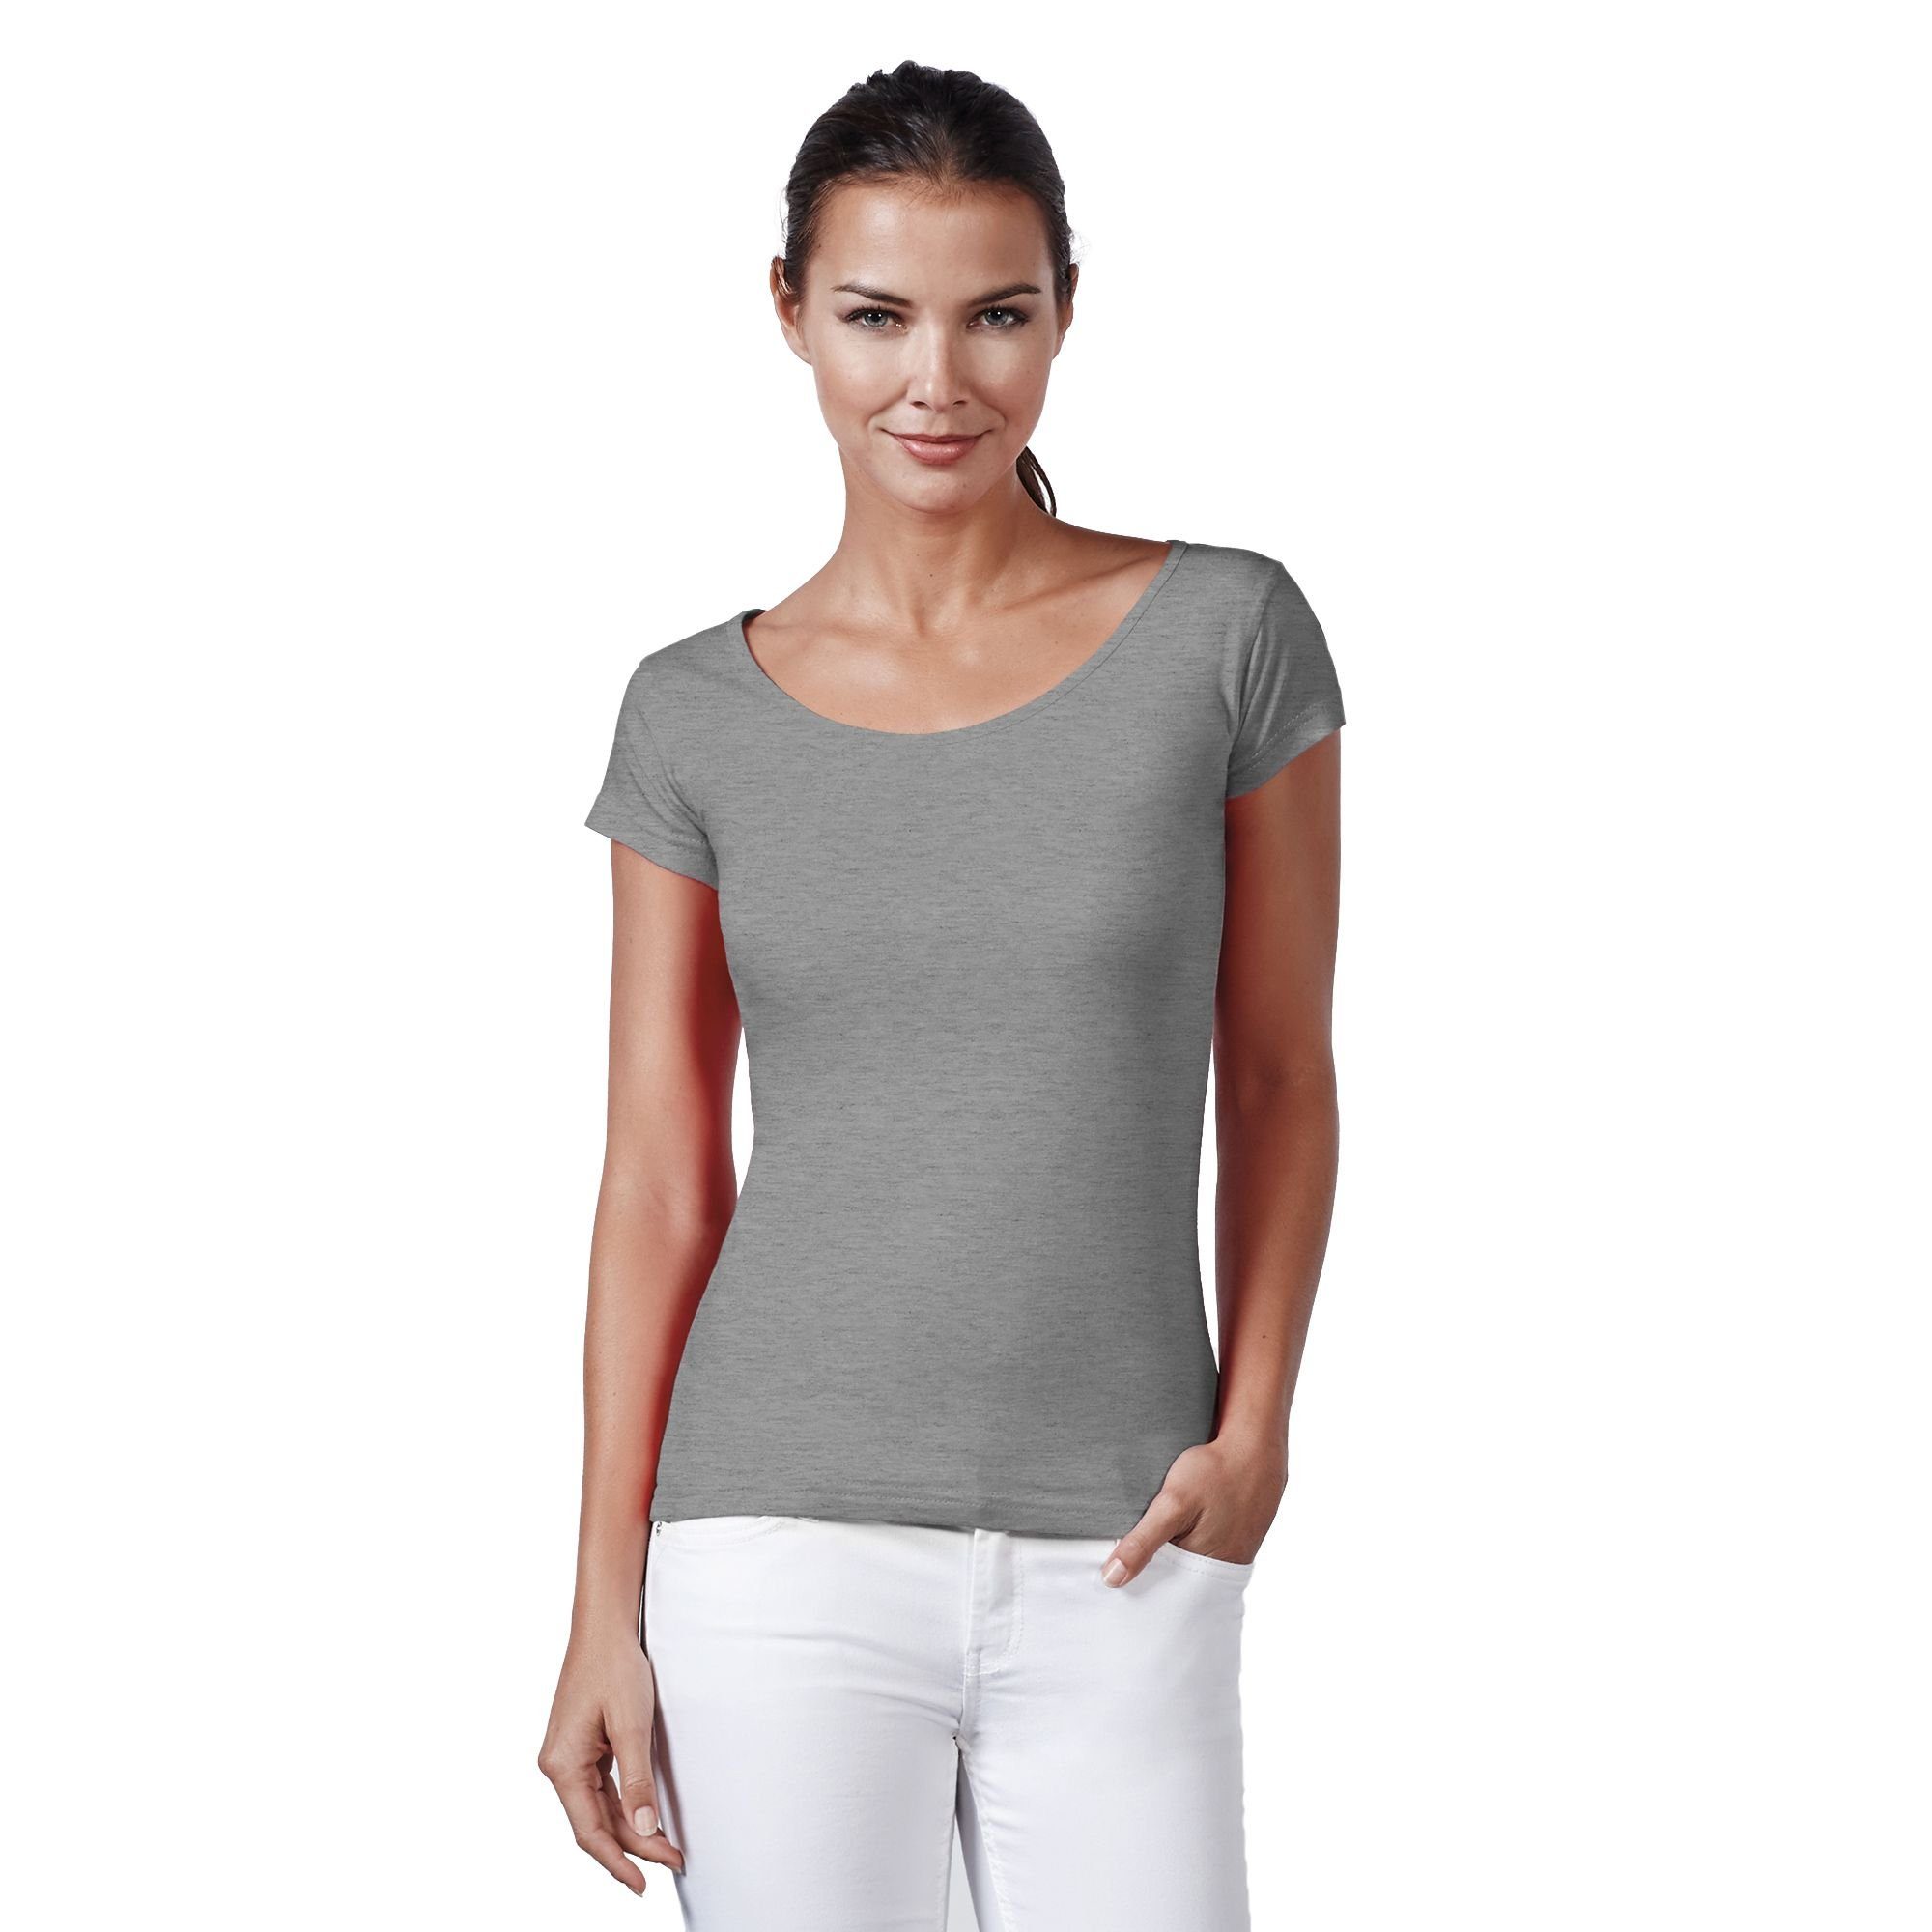 Neverless Print-Shirt »Neverless® Basic T-Shirt Damen Slim Fit Baumwolle  einfarbig Weiter Rundhals Ausschnitt« mit Print online kaufen | OTTO